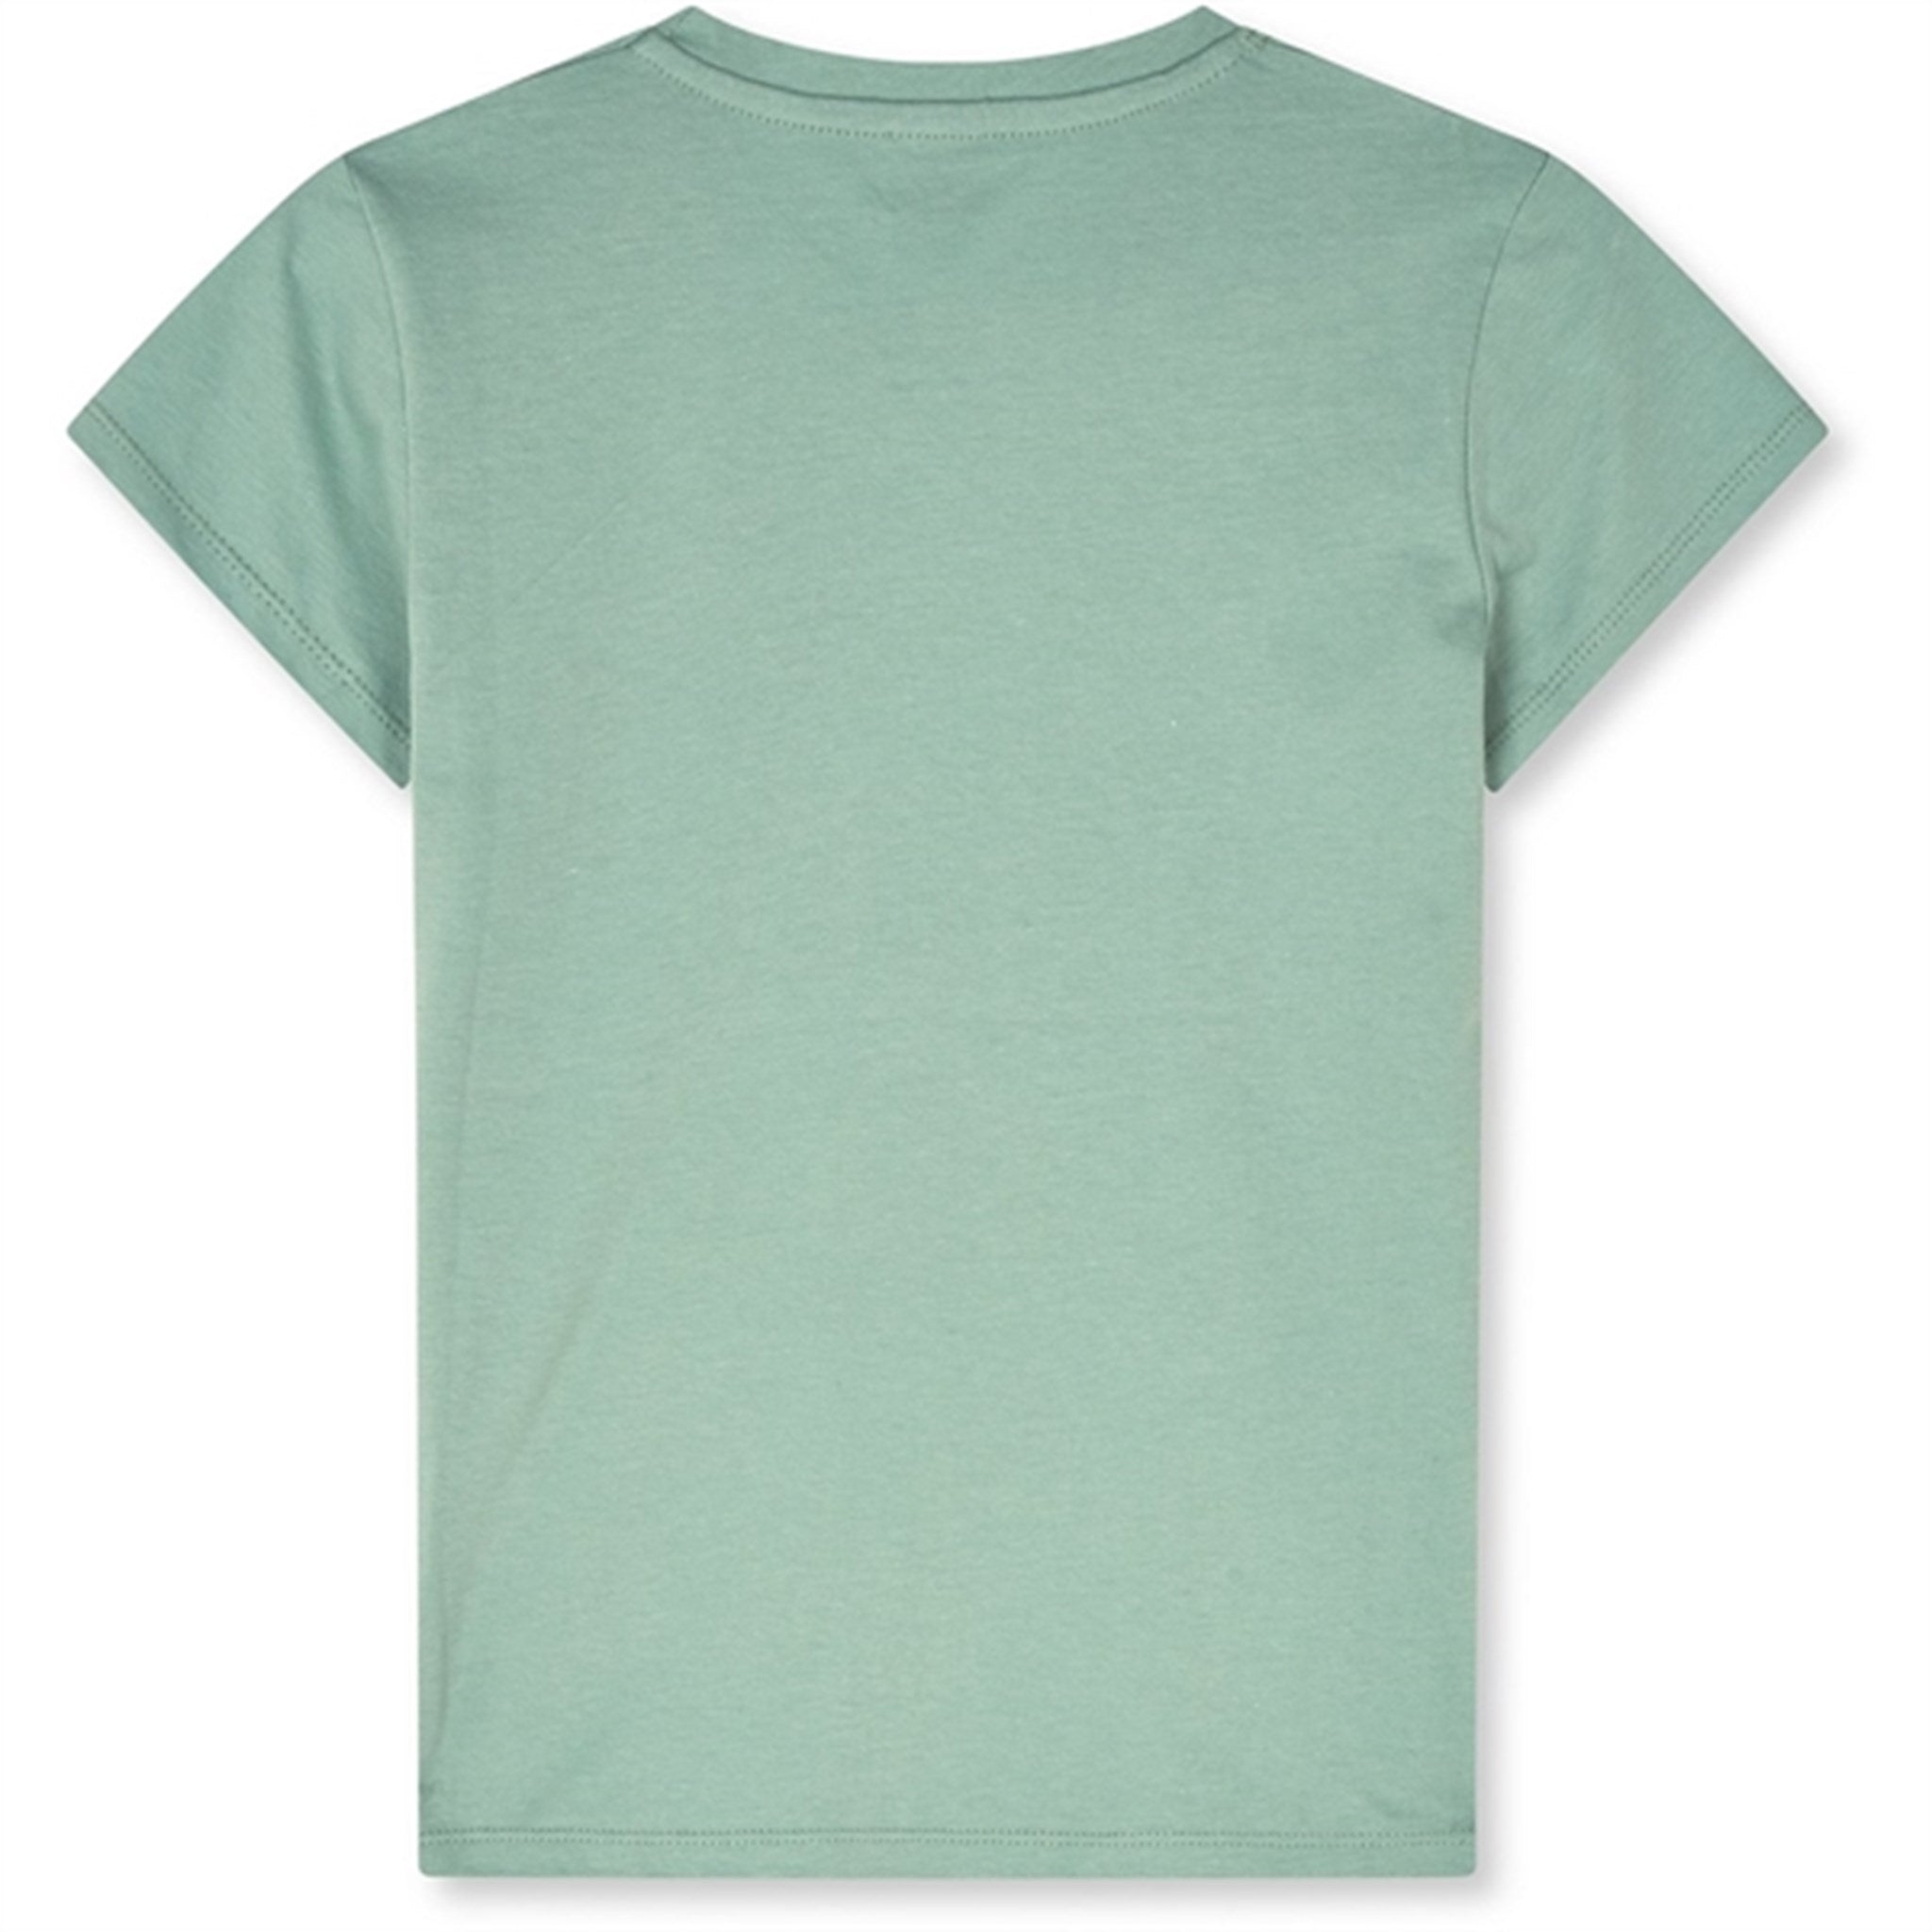 Mads Nørgaard Single Organic Tuvina T-Shirt Jadeite 2